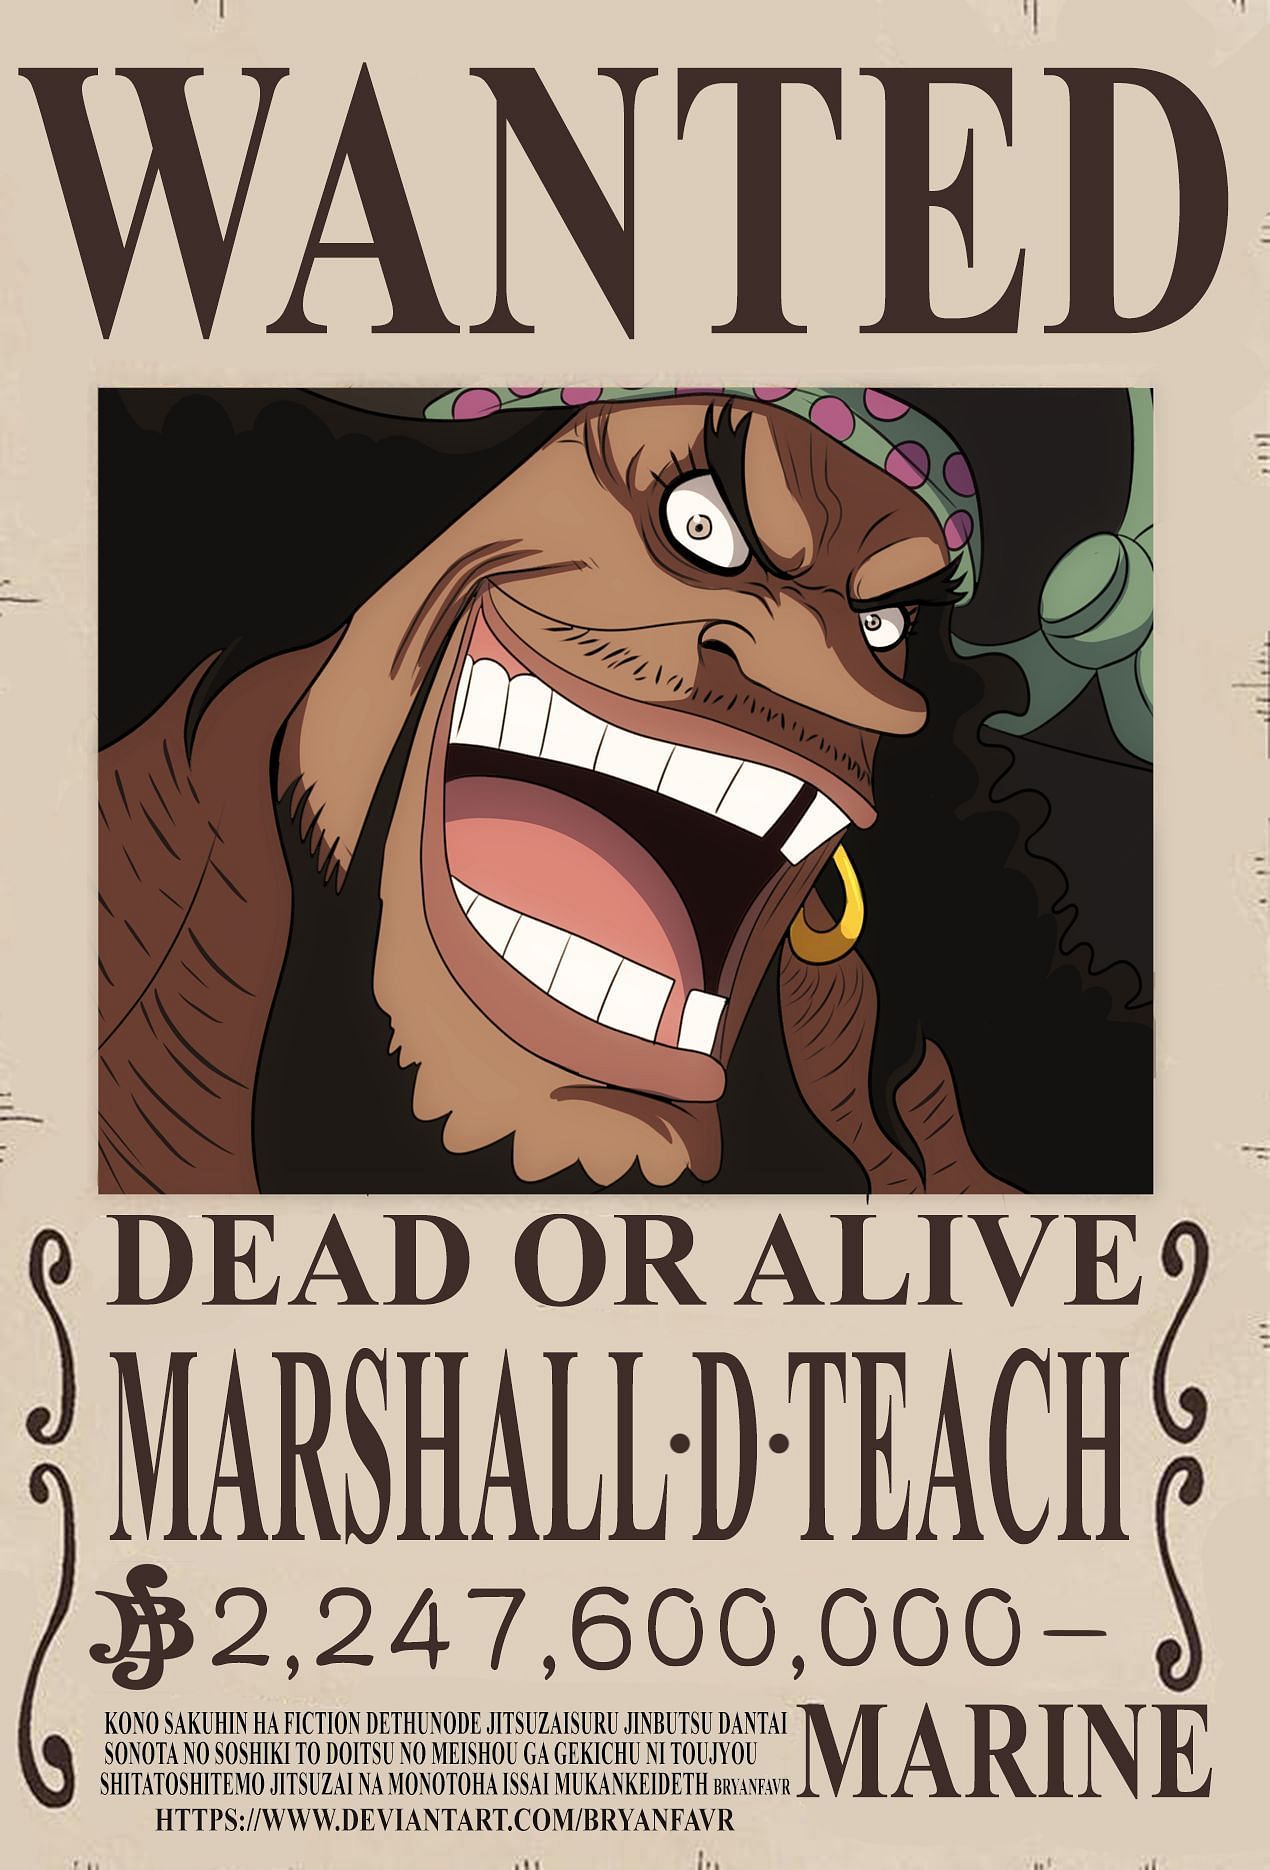 Blackbeard wanted poster (Image via bryanfavr, DeviantArt)